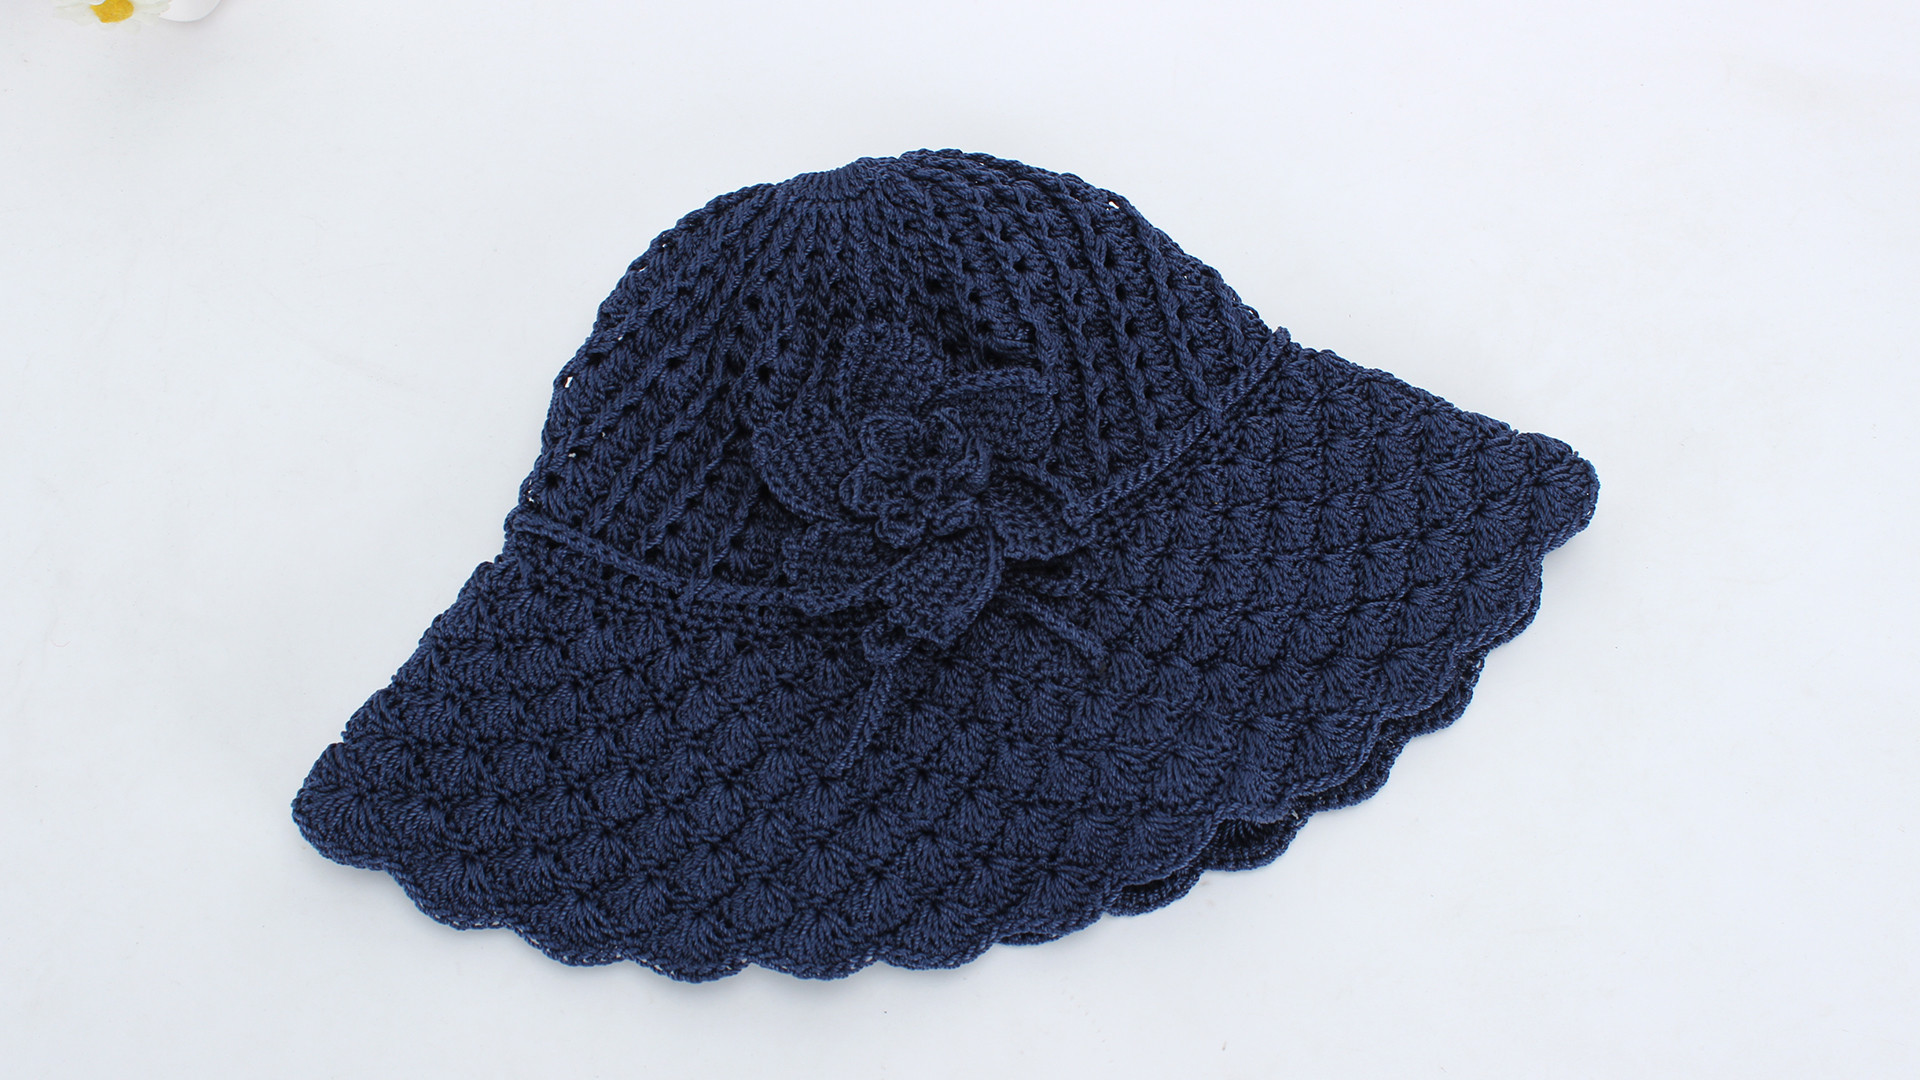 娟娟编织,美丽精致的夏凉帽,防风绳的设计更人性化第三集手工编织